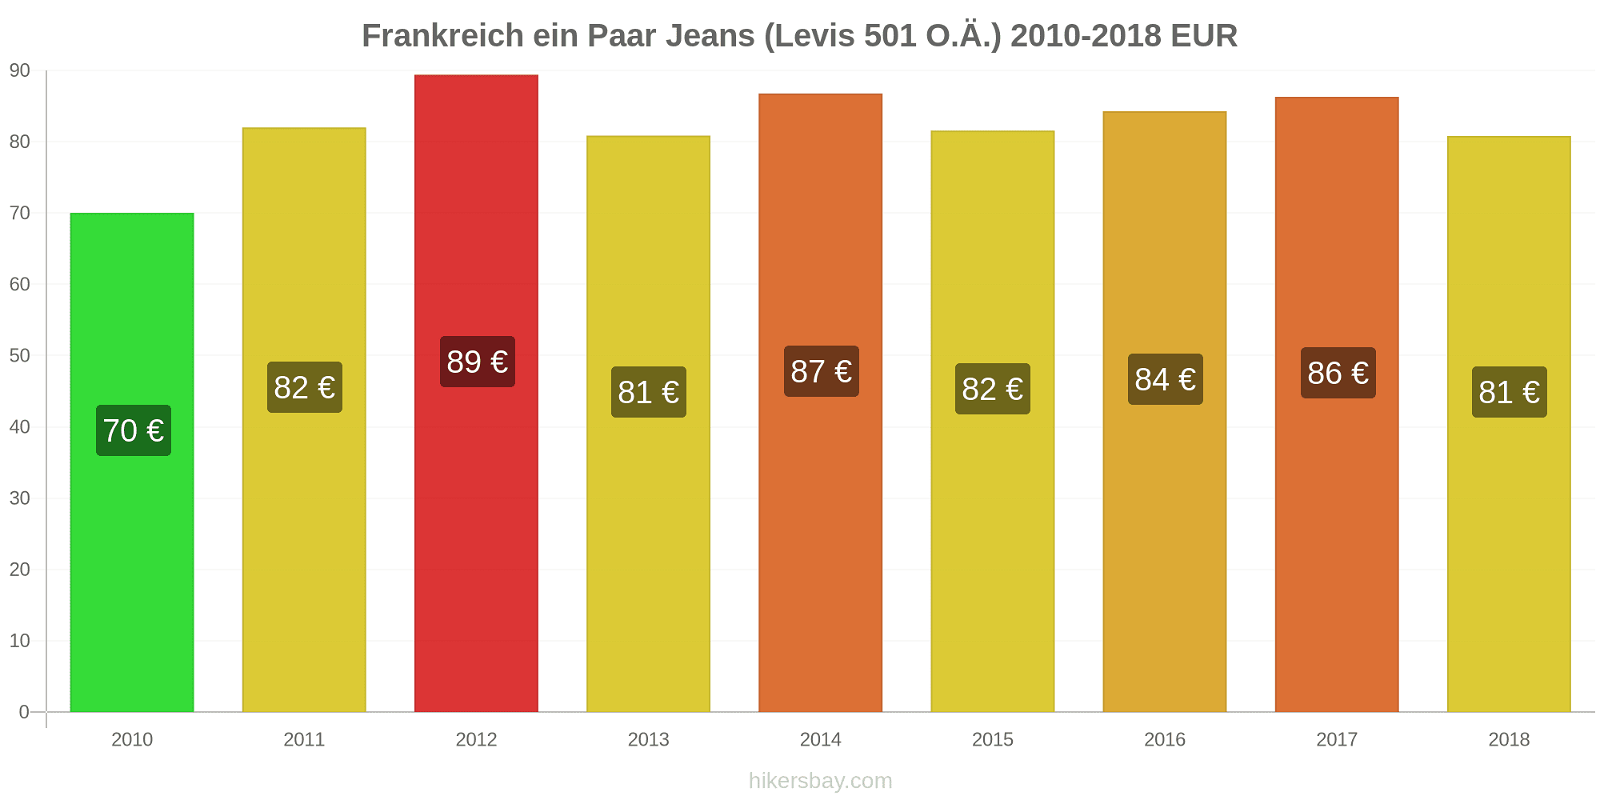 Frankreich Preisänderungen 1 Paar Jeans (Levis 501 oder ähnlich) hikersbay.com